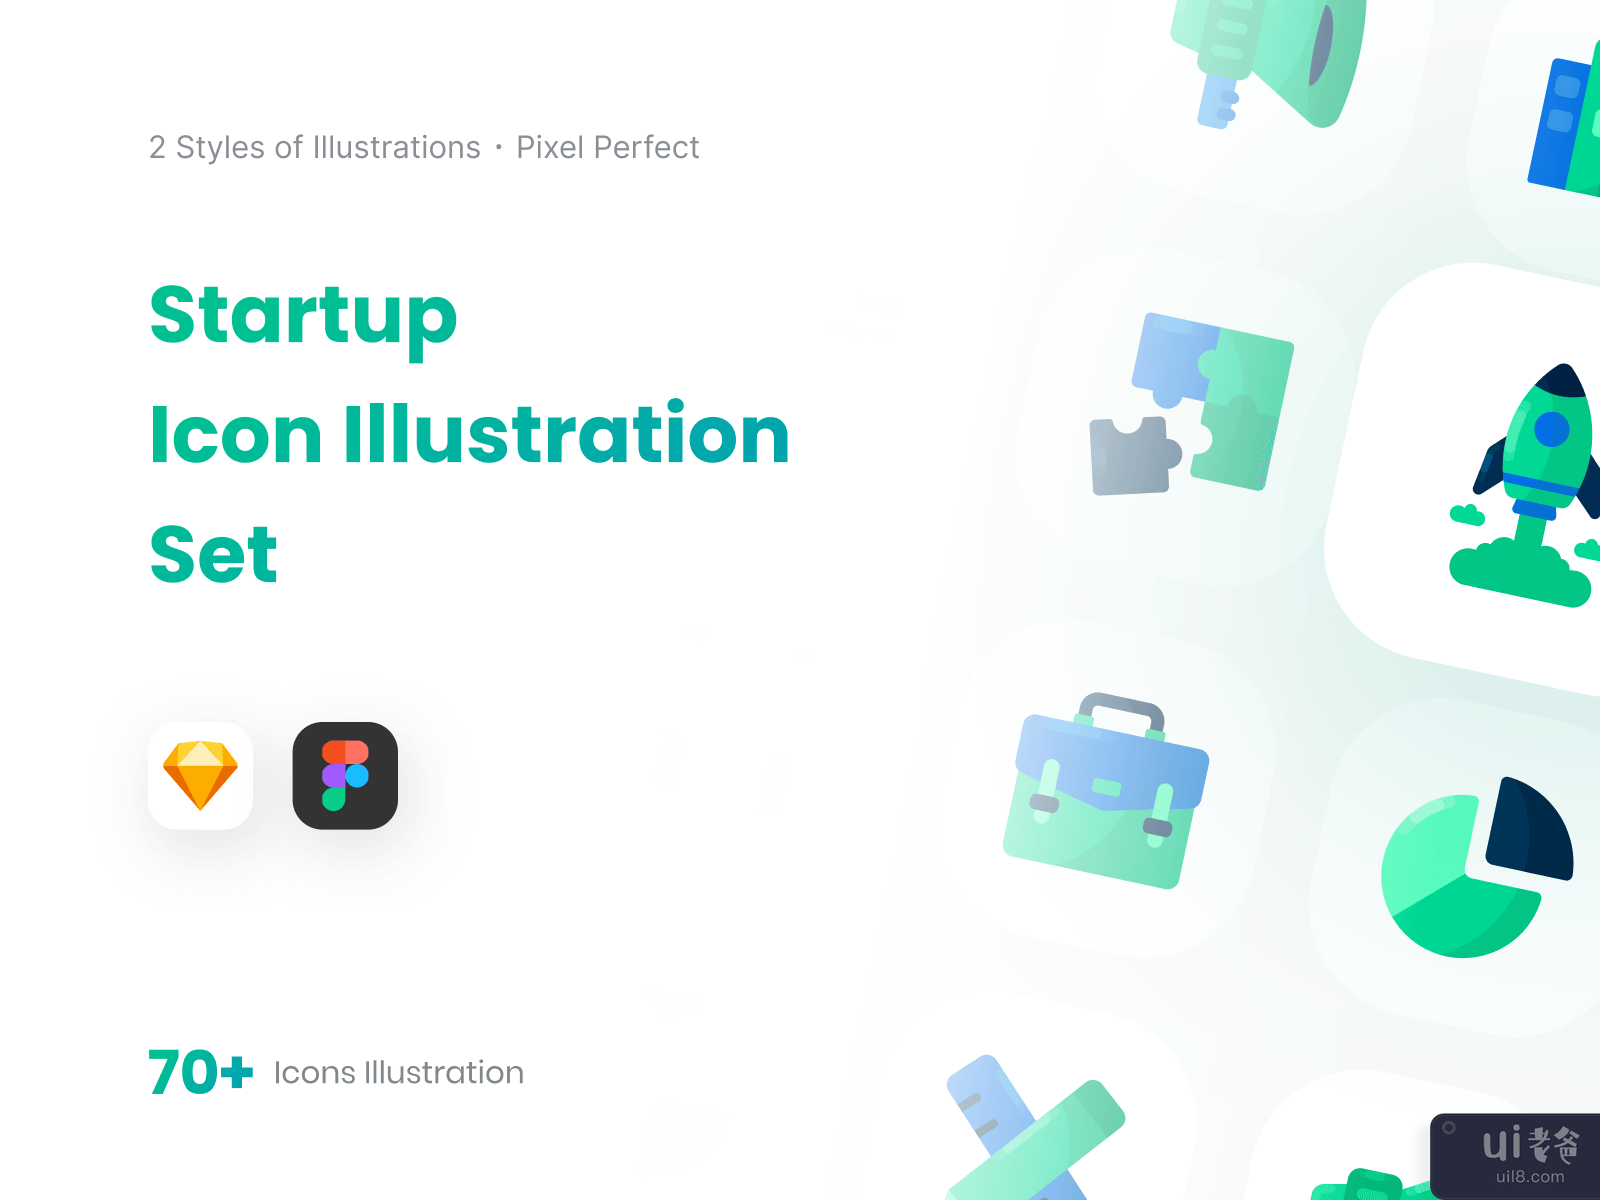 启动图标插图集-混合风格(Startup Icon Illustration Set - Mix Style)插图